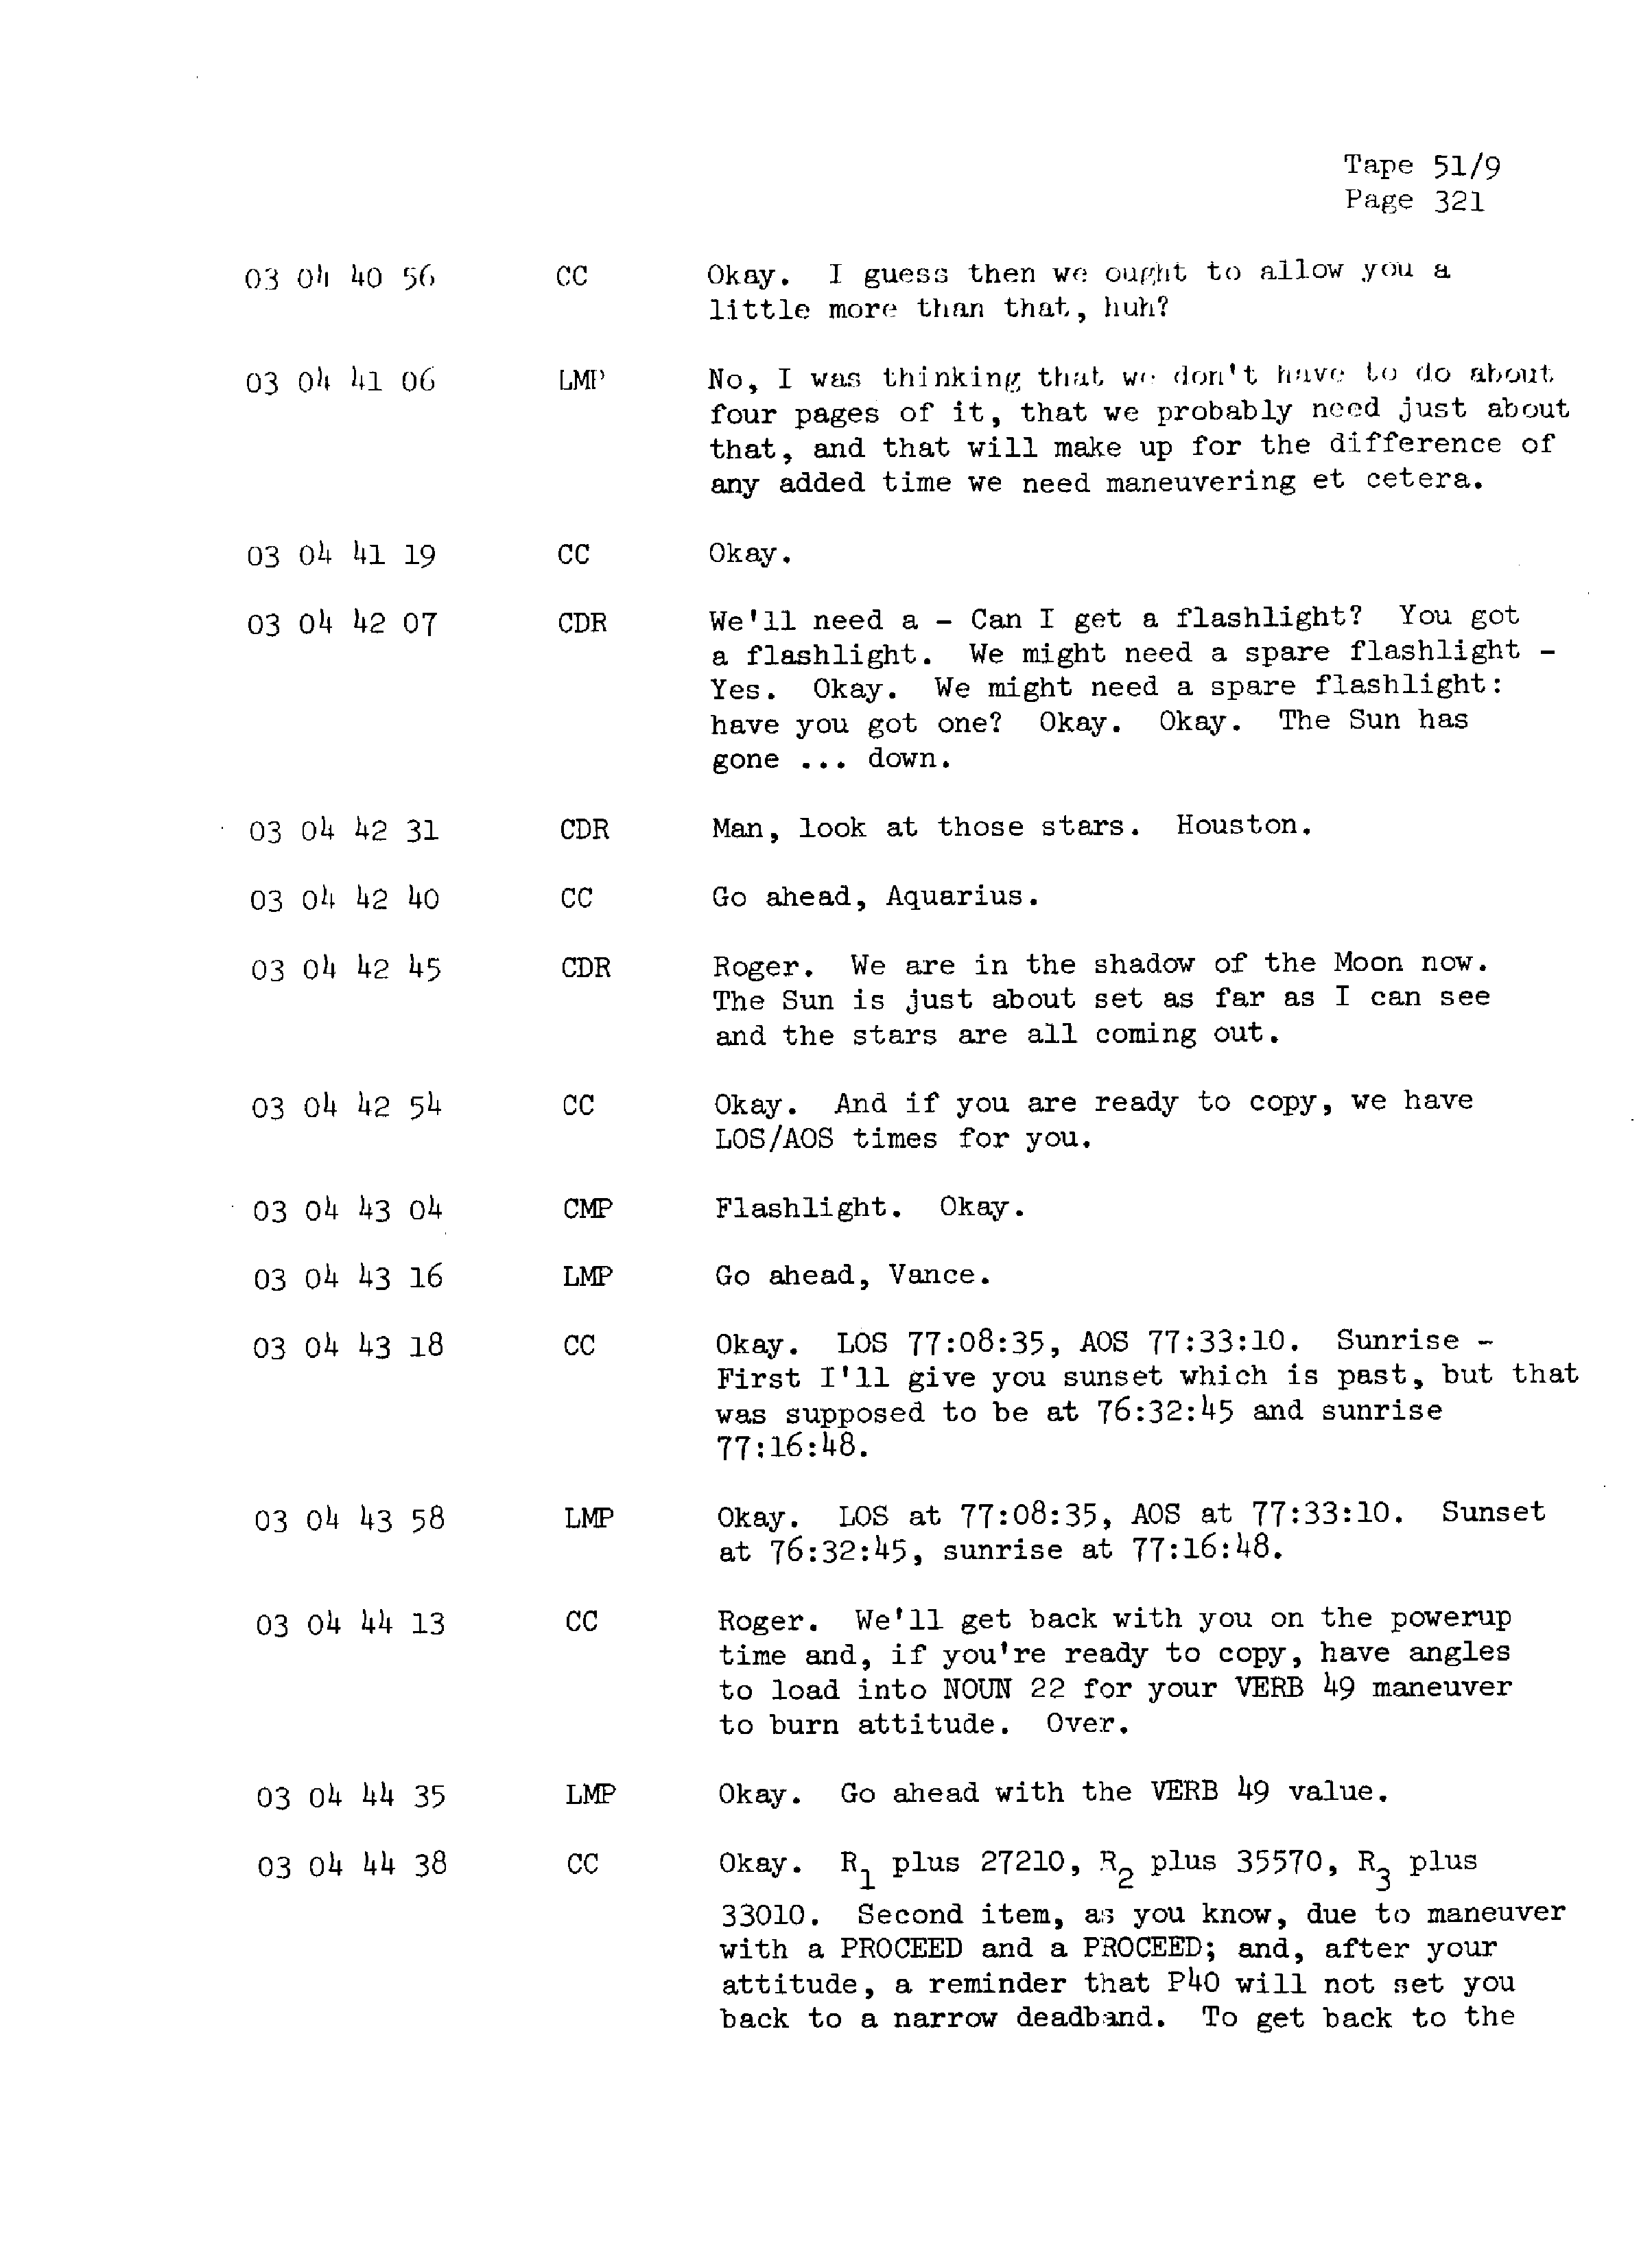 Page 328 of Apollo 13’s original transcript